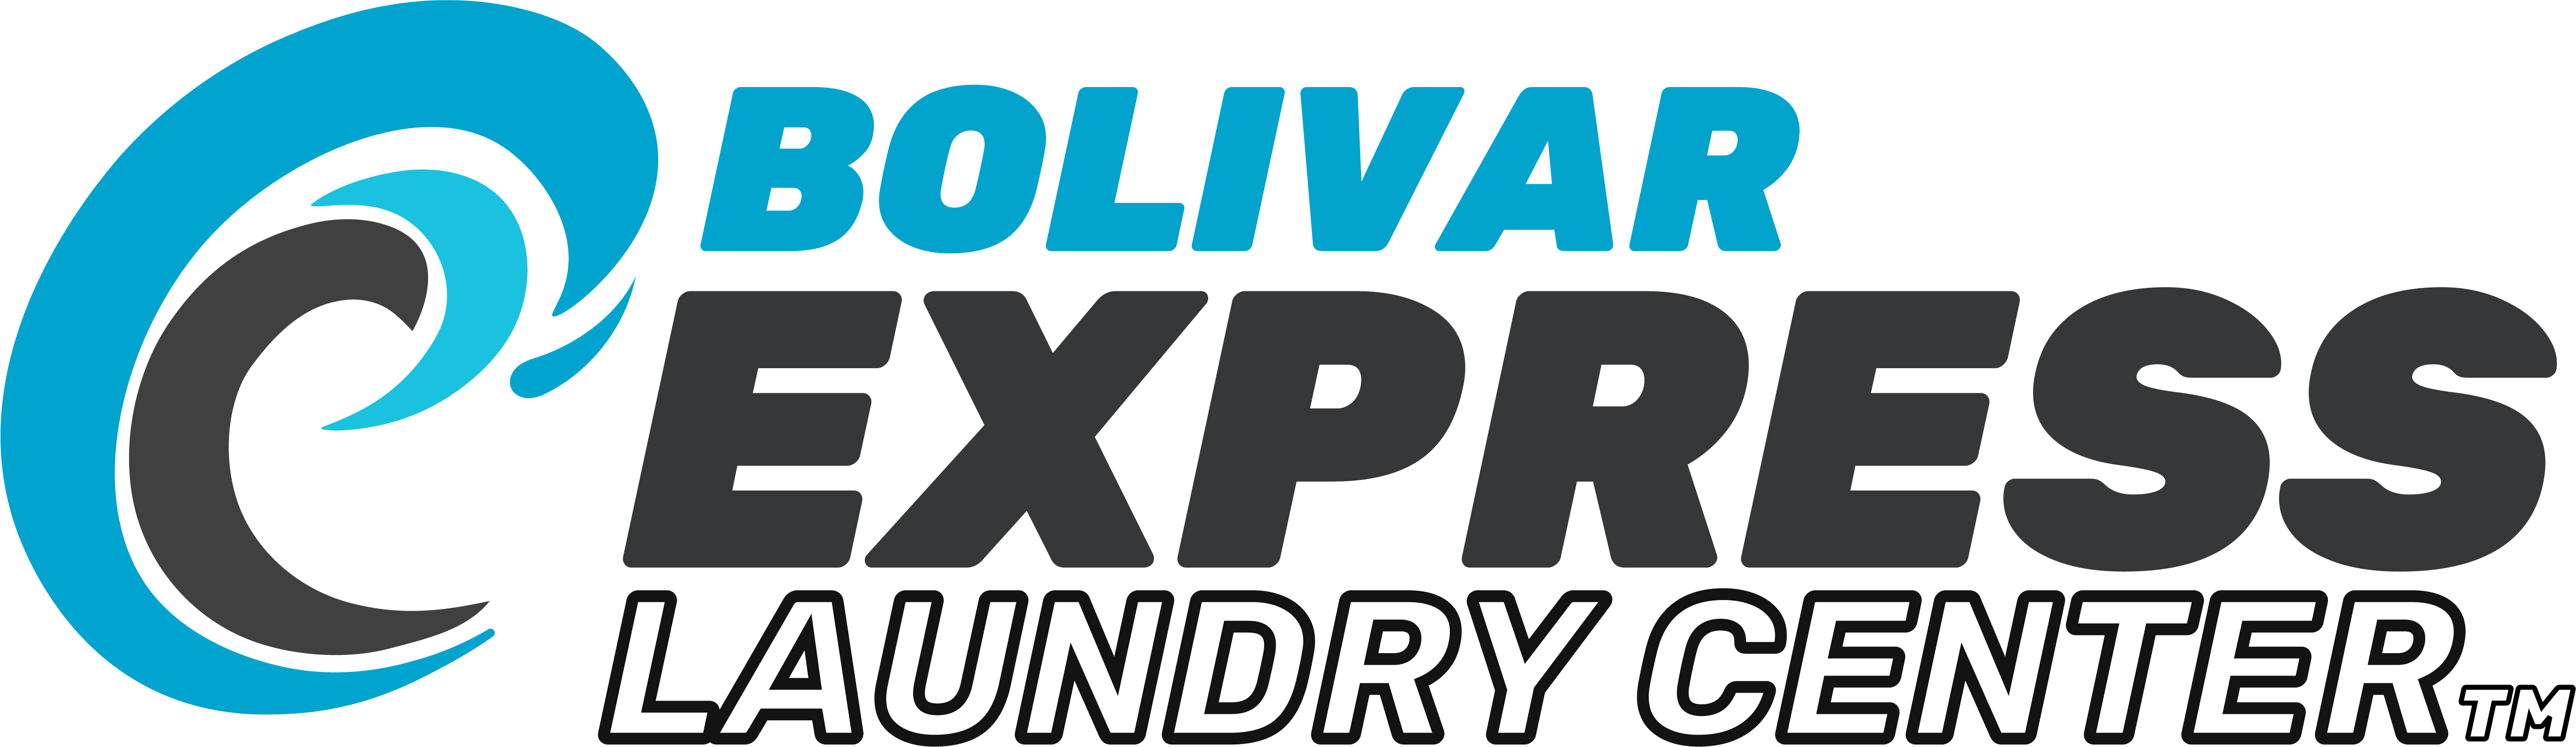 Bolivar Express Laundry Center